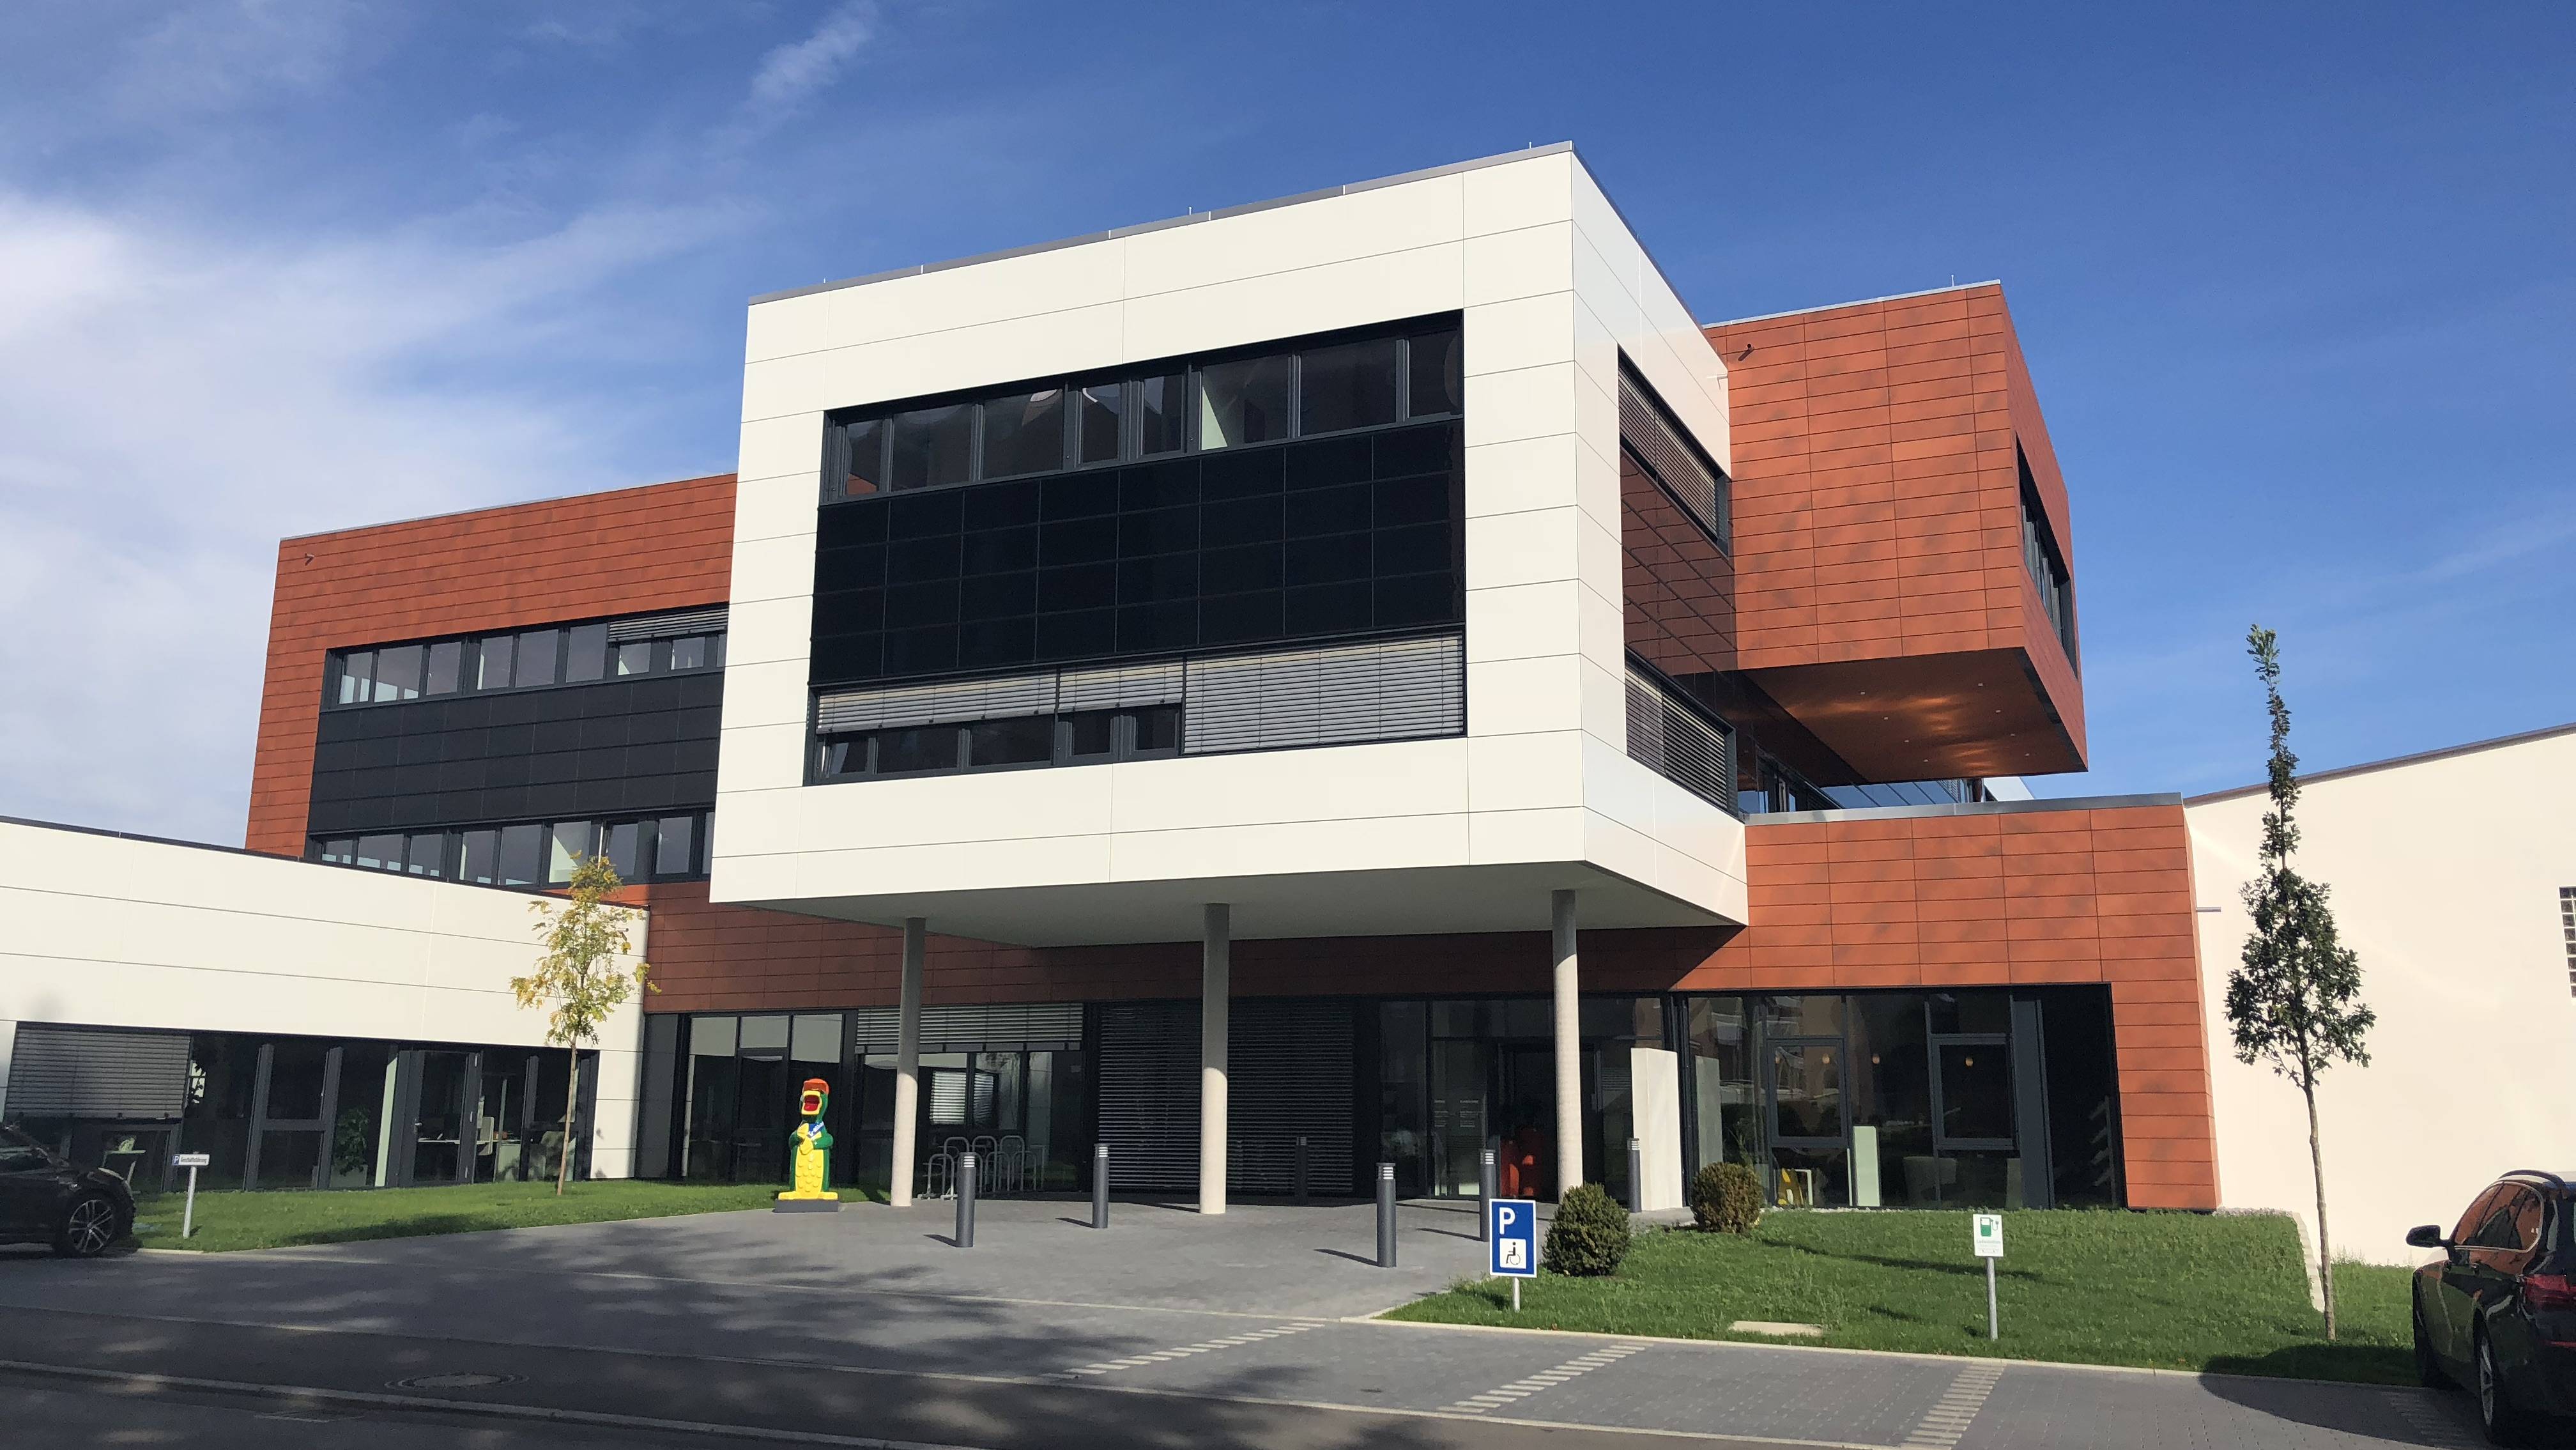 
    
            
                    Das neue Gebäude der Stadtwerke Trossingen
                
        
